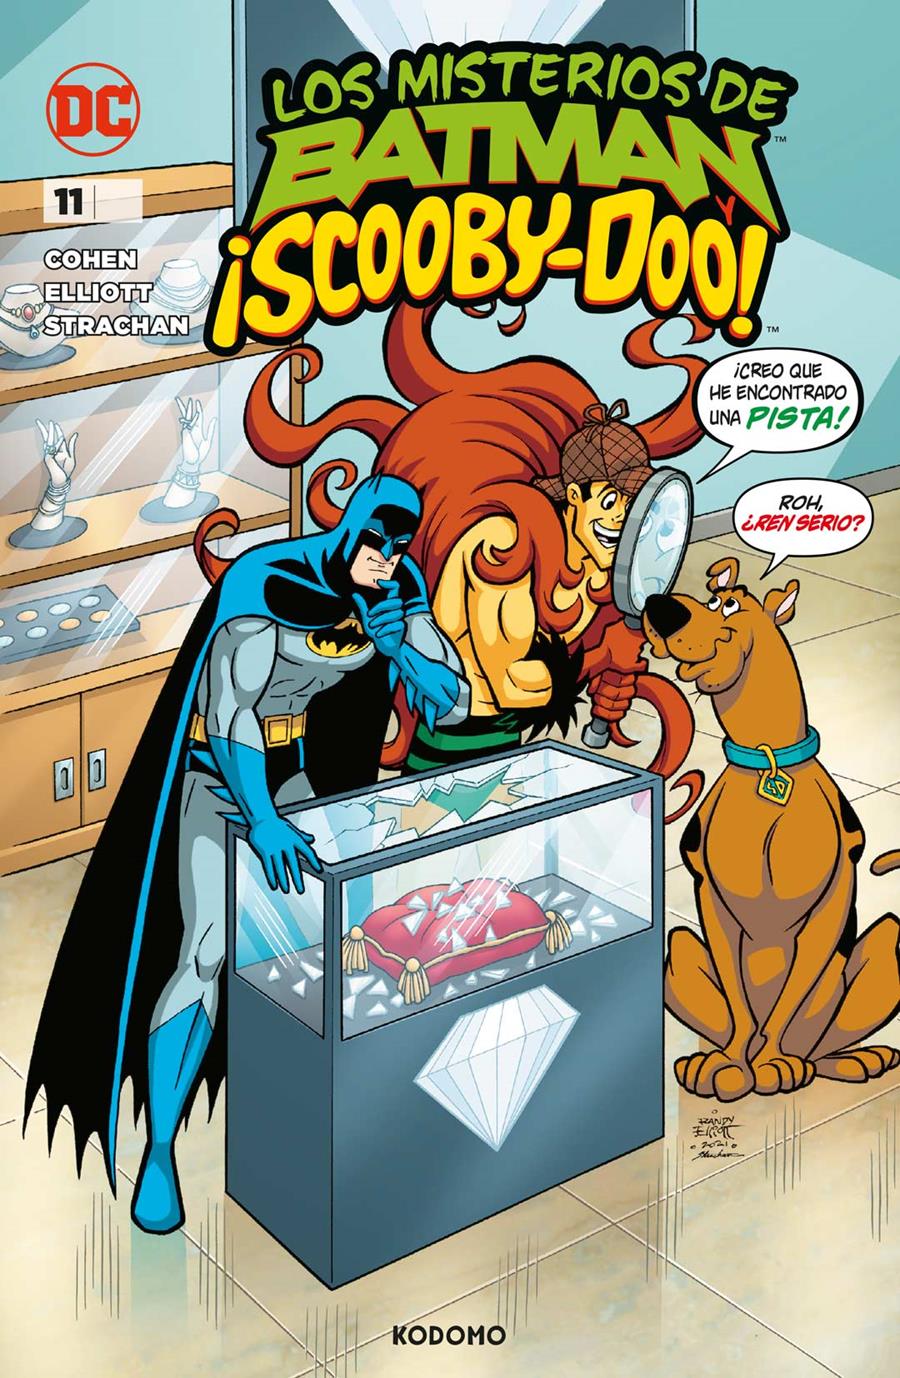 Los misterios de Batman y ¡Scooby-Doo! núm. 11 | N1123-ECC33 | Ivan Cohen / Randy Elliott | Terra de Còmic - Tu tienda de cómics online especializada en cómics, manga y merchandising